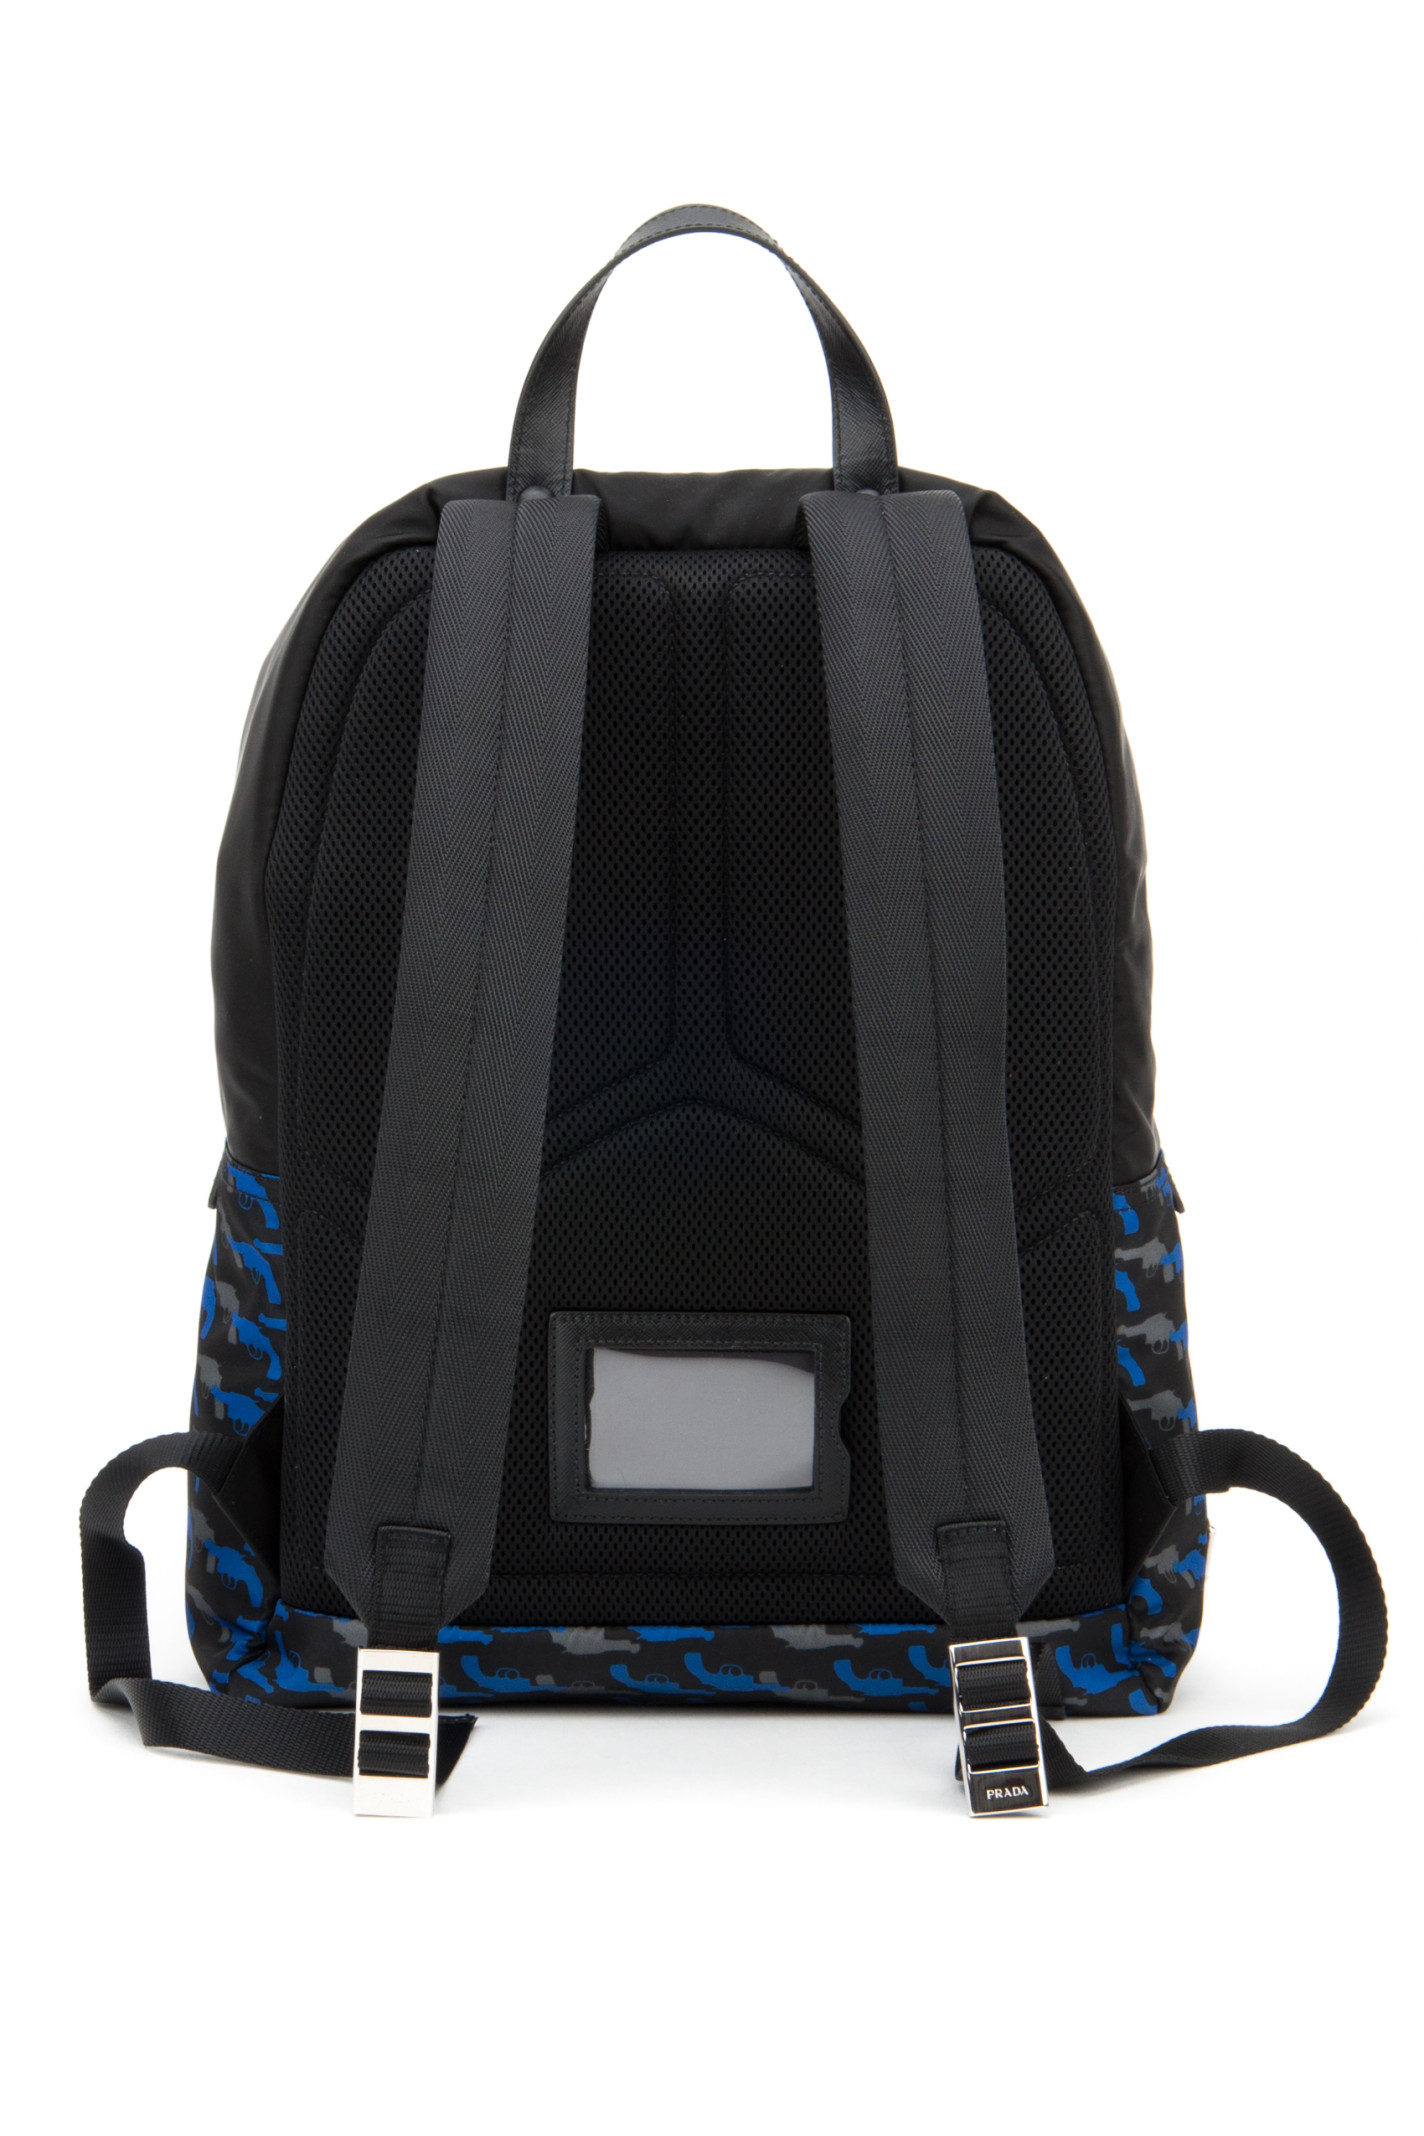 Prada Printed Twill Backpack in Blue for Men (BLUETTE DI) | Lyst  